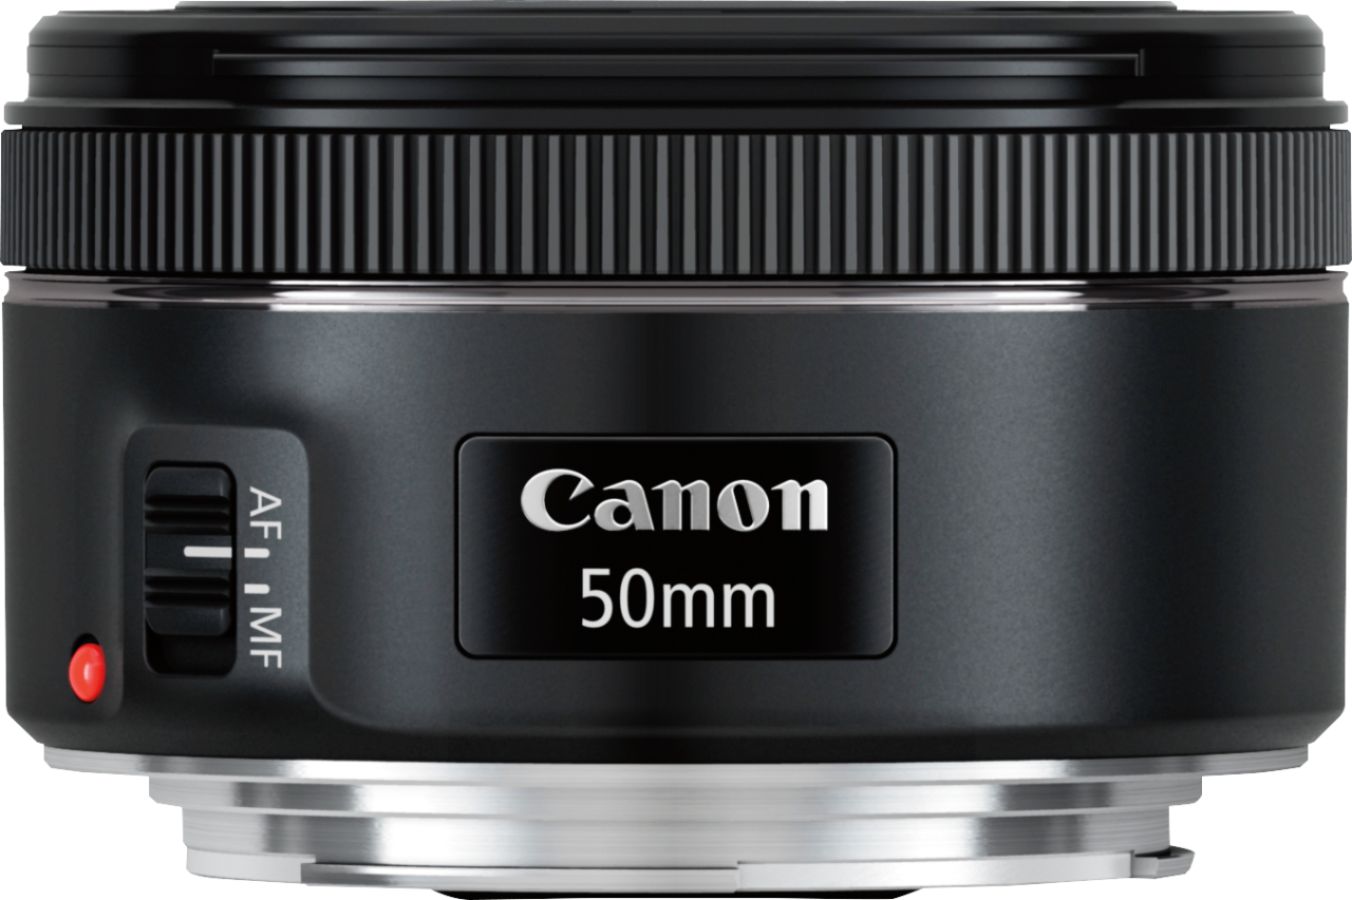 Canon EF50mm F1.8 STM Standard Prime Lens for EOS DSLR Cameras Black  0570C002 - Best Buy